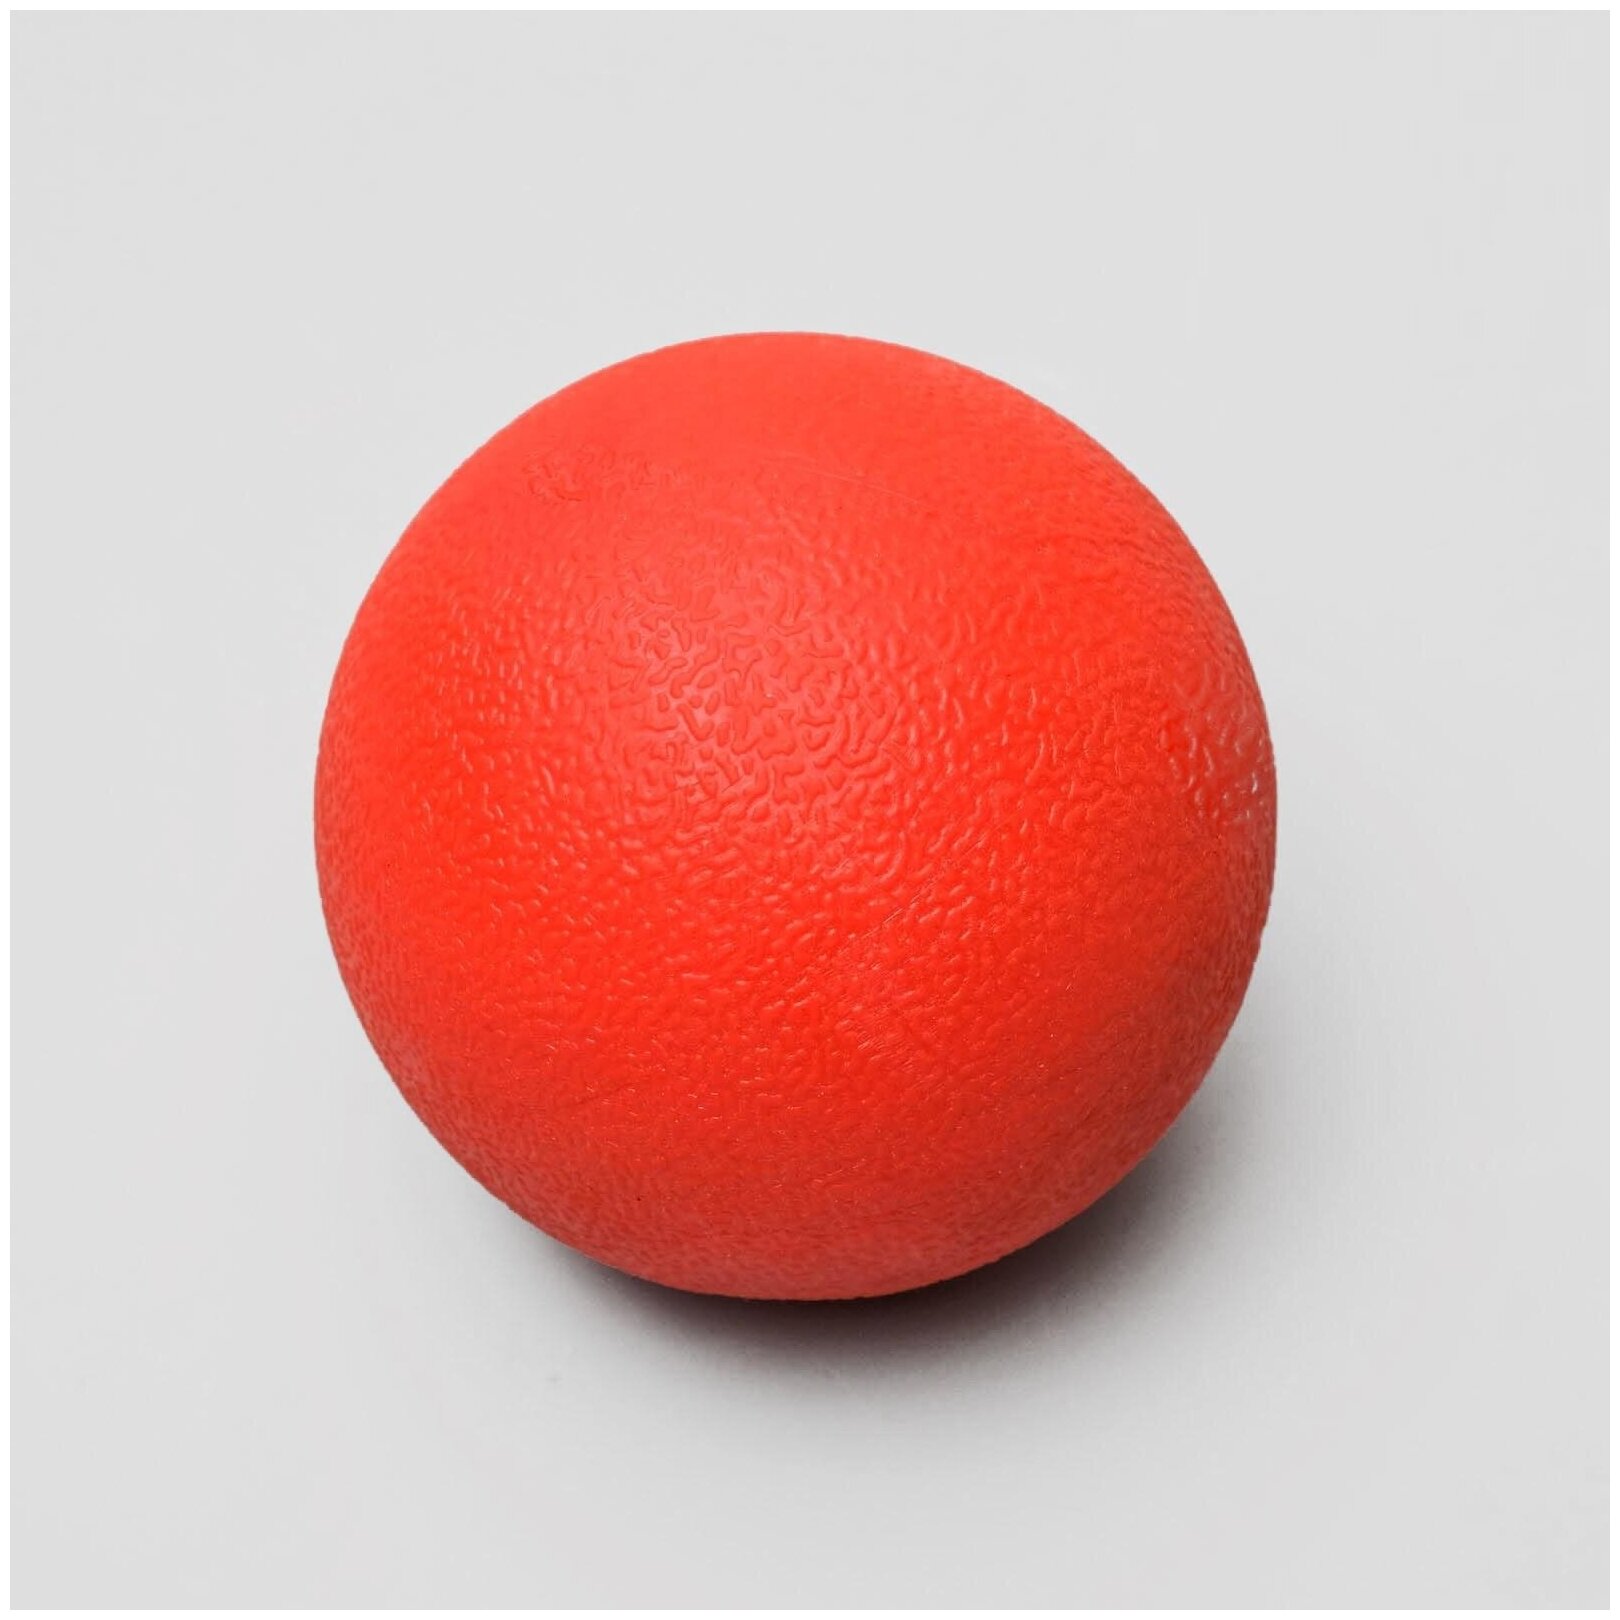 Игрушка "Цельнолитой шар" большой / Мяч для собак цельный / Мячик для собак большой, 8 см, каучук